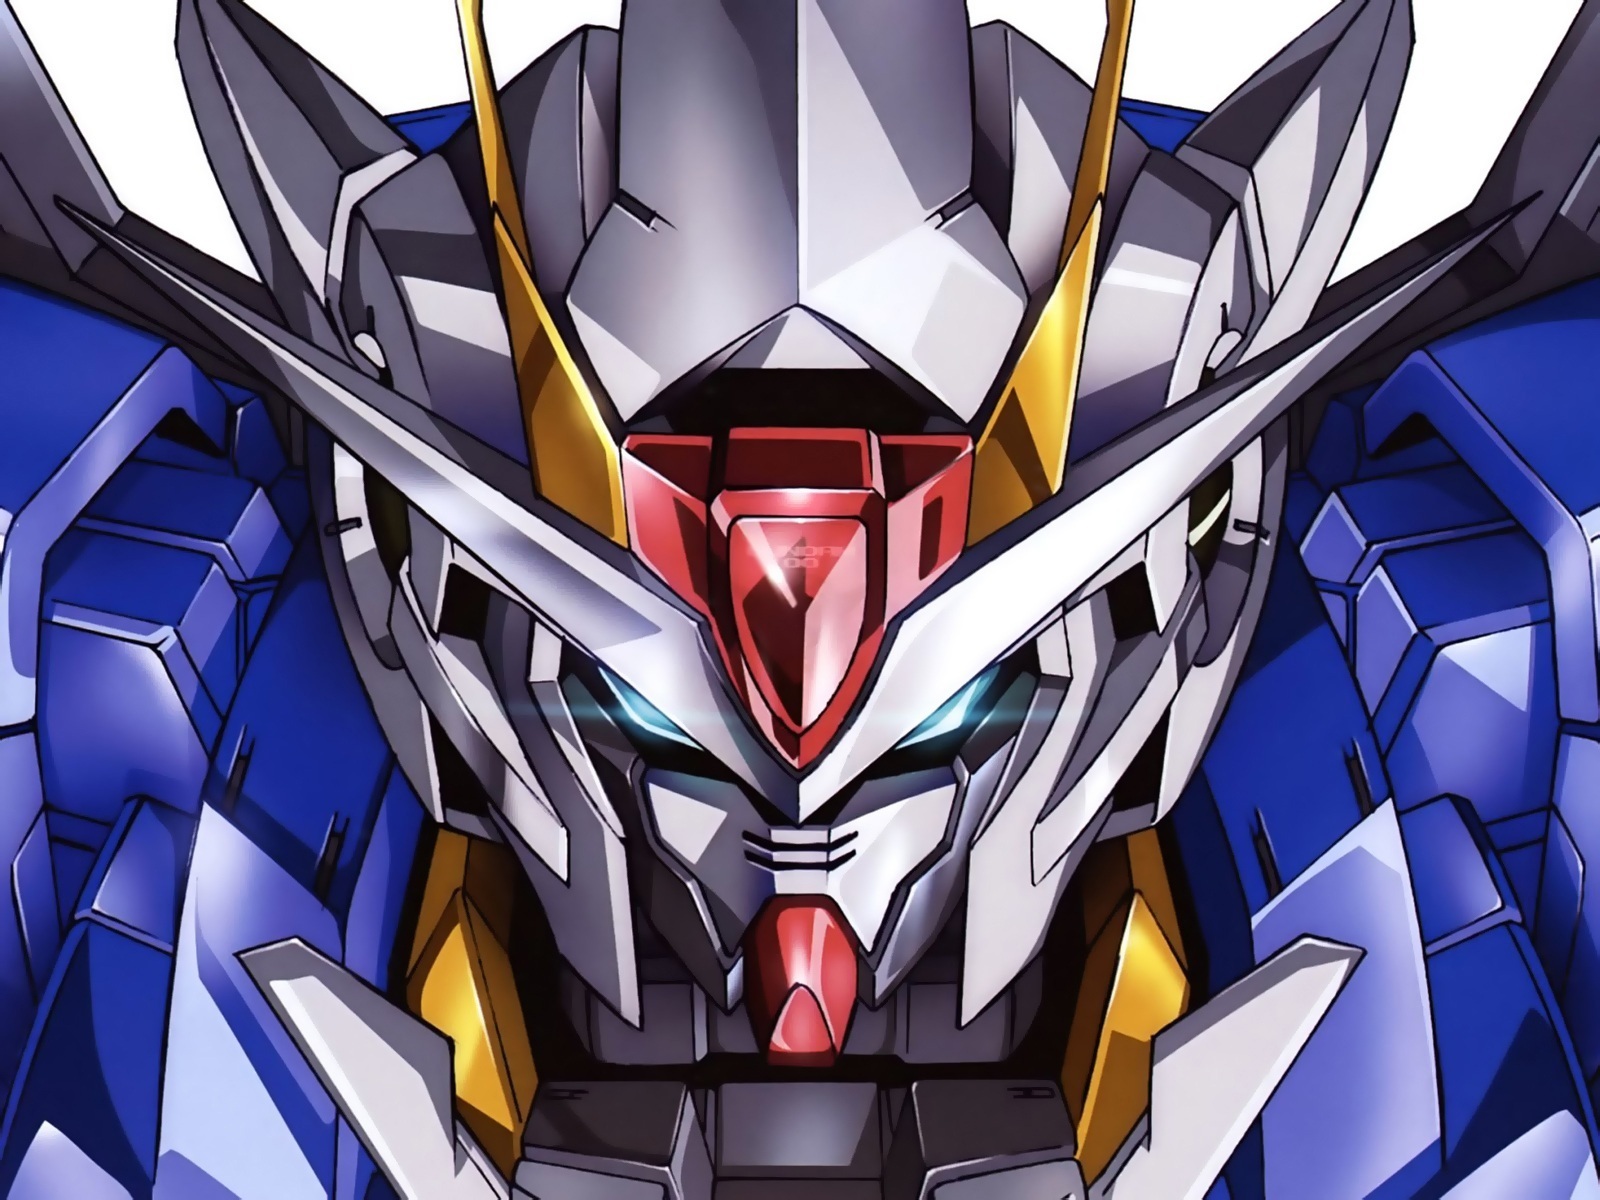 Gundam-type Mobile Suit | Gundam Fanon Wiki | FANDOM ...